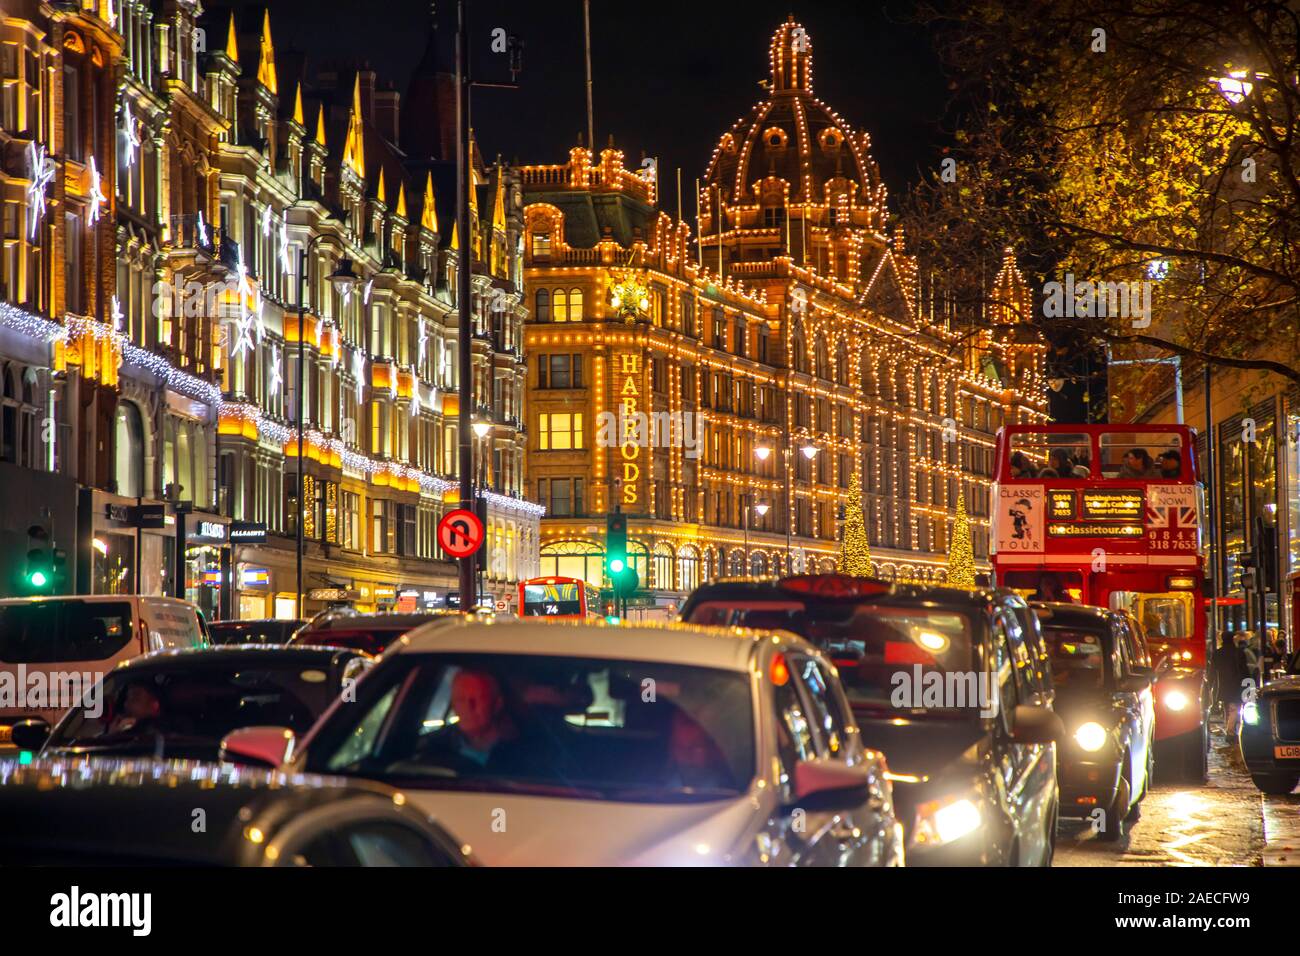 Londres, lujoso centro comercial Harrods, iluminación, decoración de Navidad, Brompton Road, Knightsbridge, Reino Unido Foto de stock